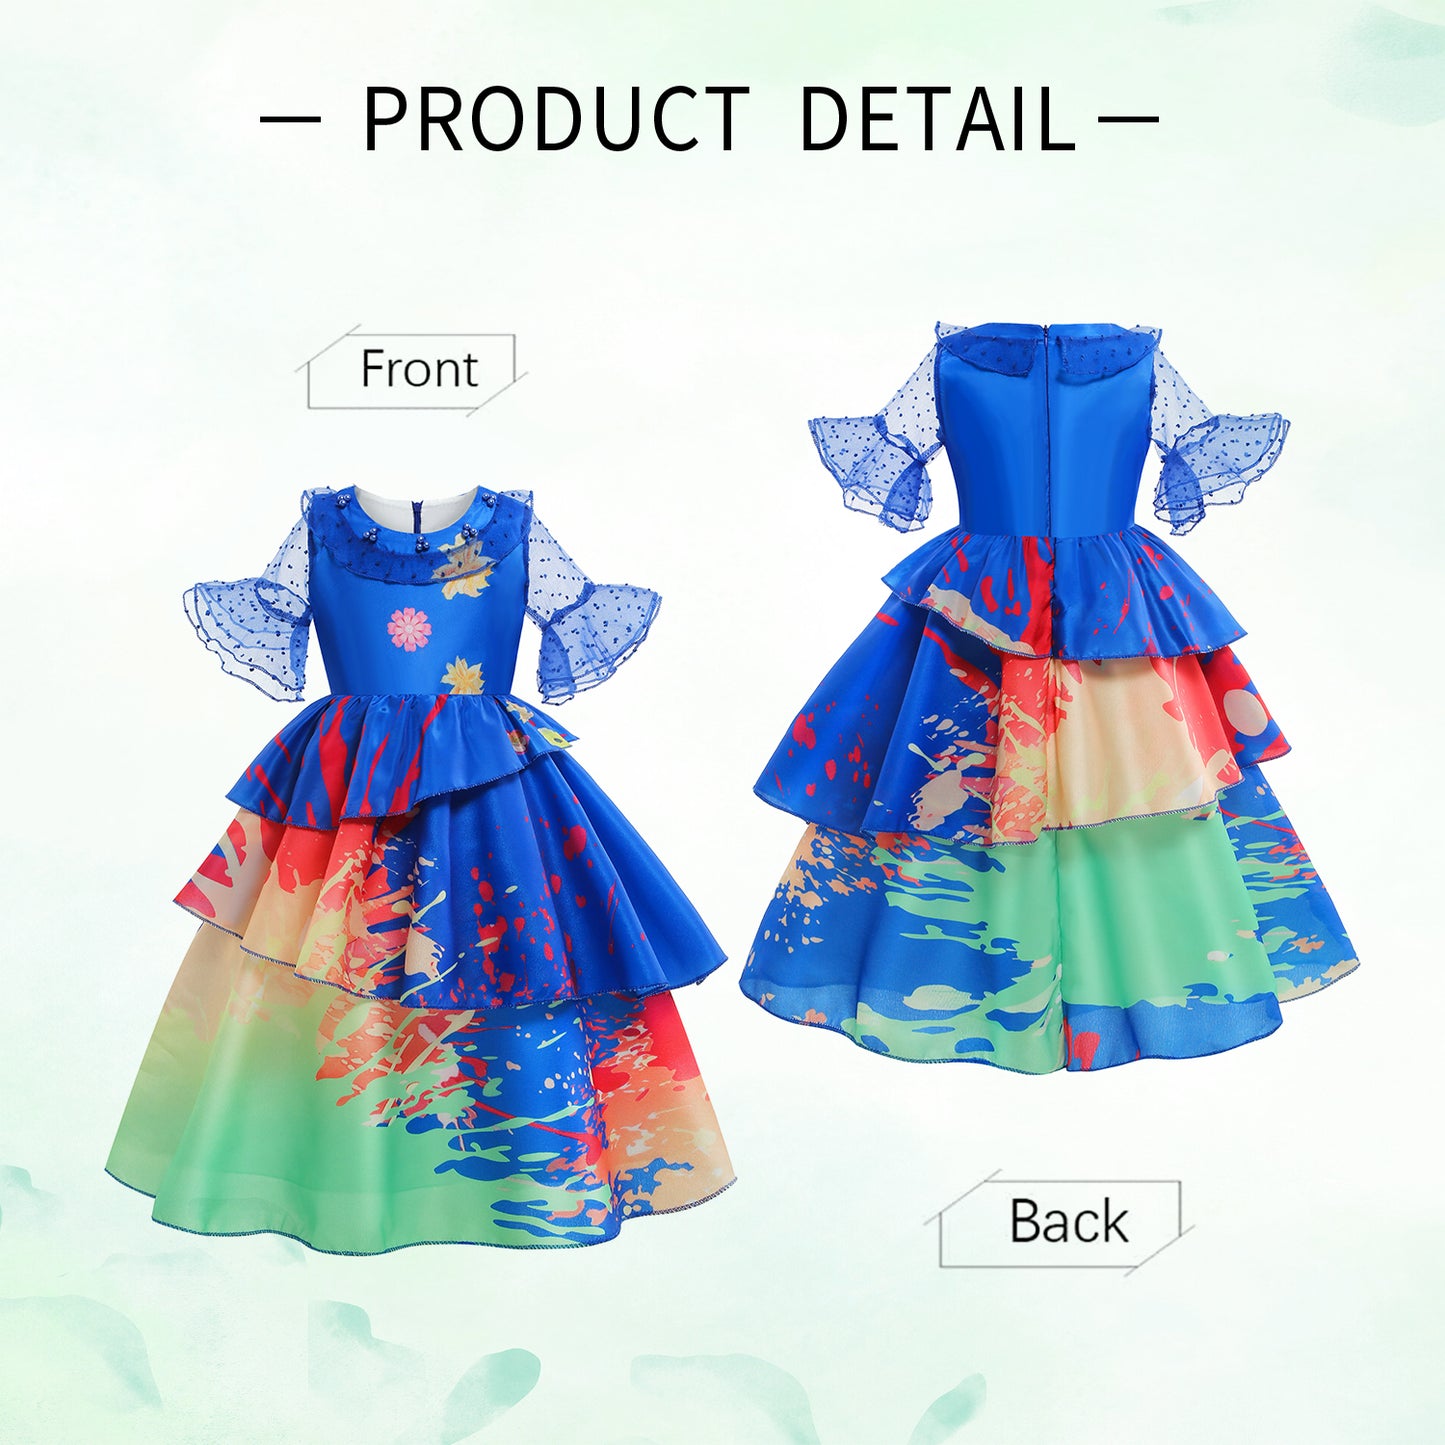 Foierp Girls Dress up - Costume Dress (Blue)